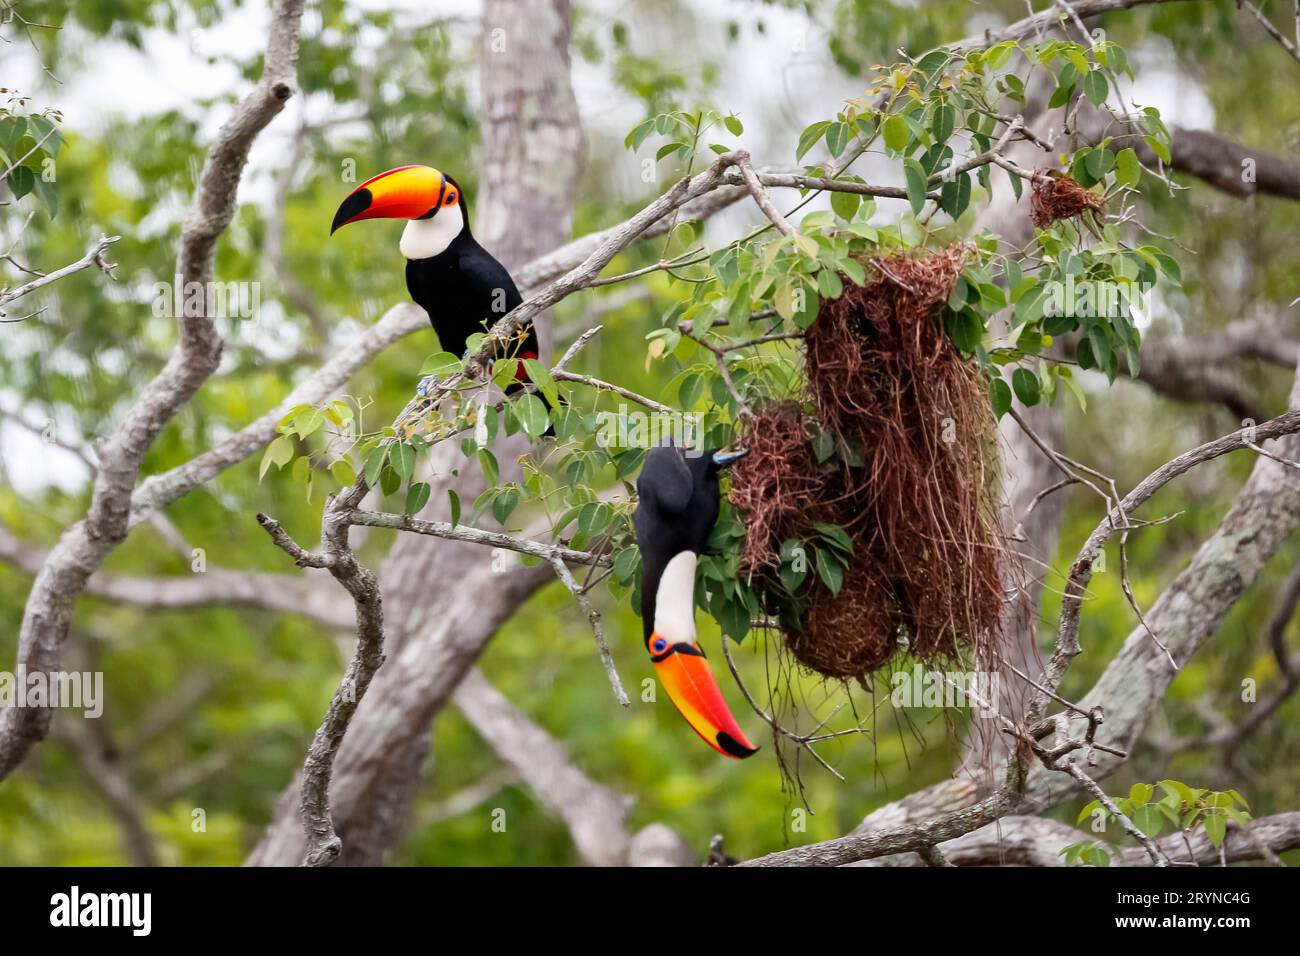 Nahaufnahme von zwei Toco Toucans, die Vögel plündern, nisten in einem Baum, einer sitzt, einer hängt unten, Pantana Stockfoto